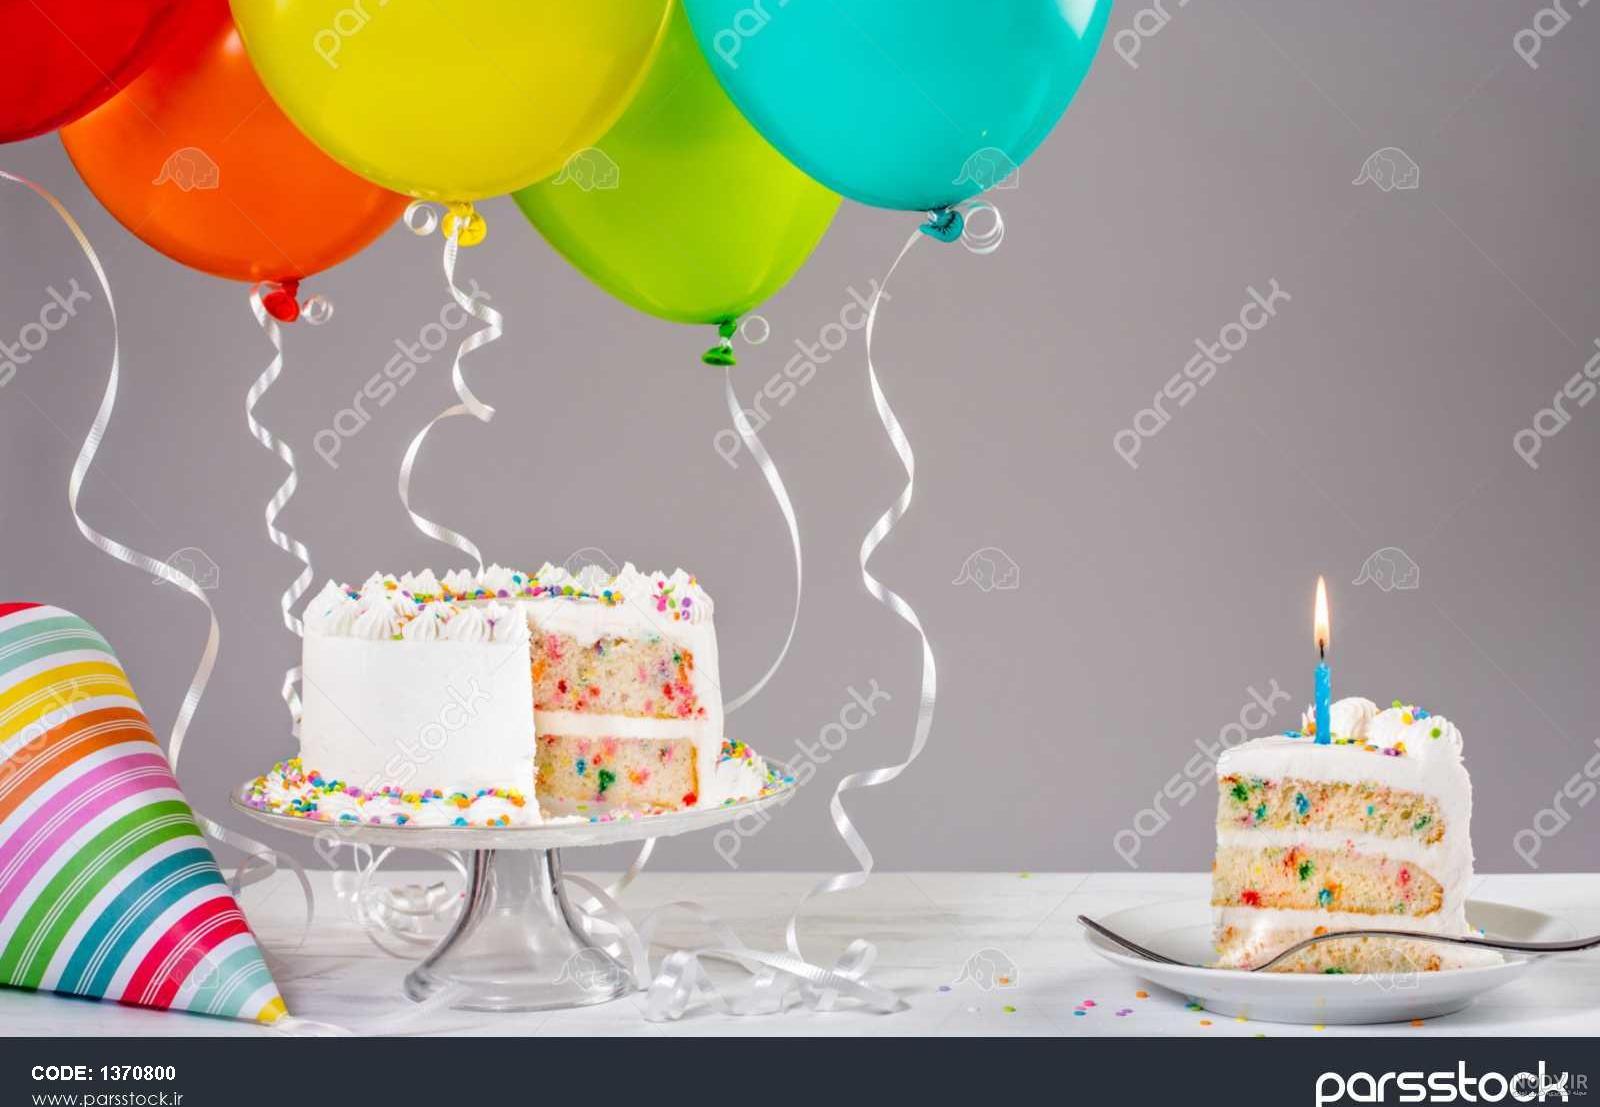 عکس کیک و بادکنک برای تولد